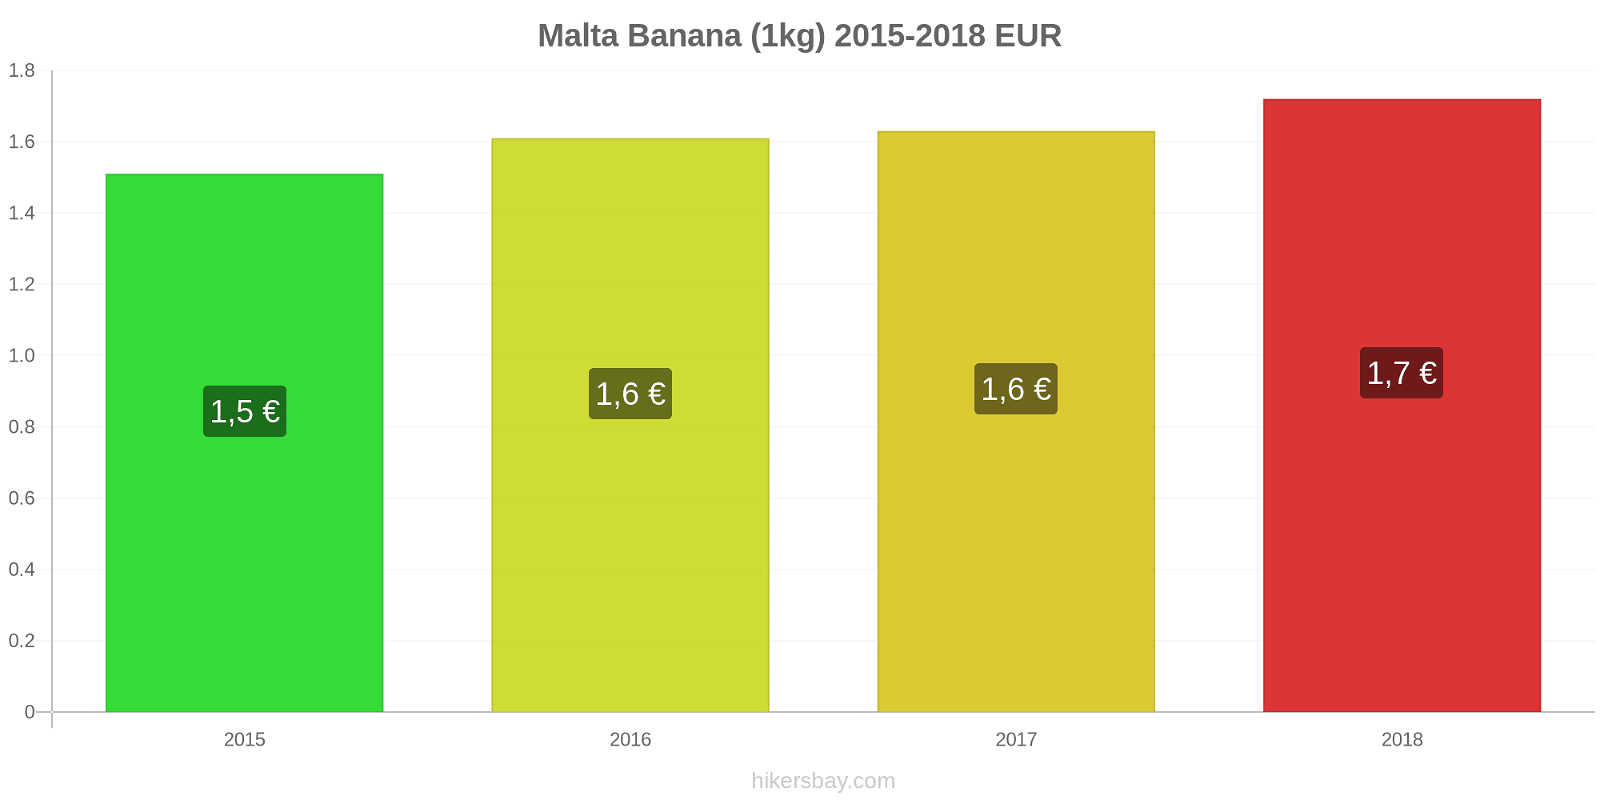 Malta cambi di prezzo Banane (1kg) hikersbay.com